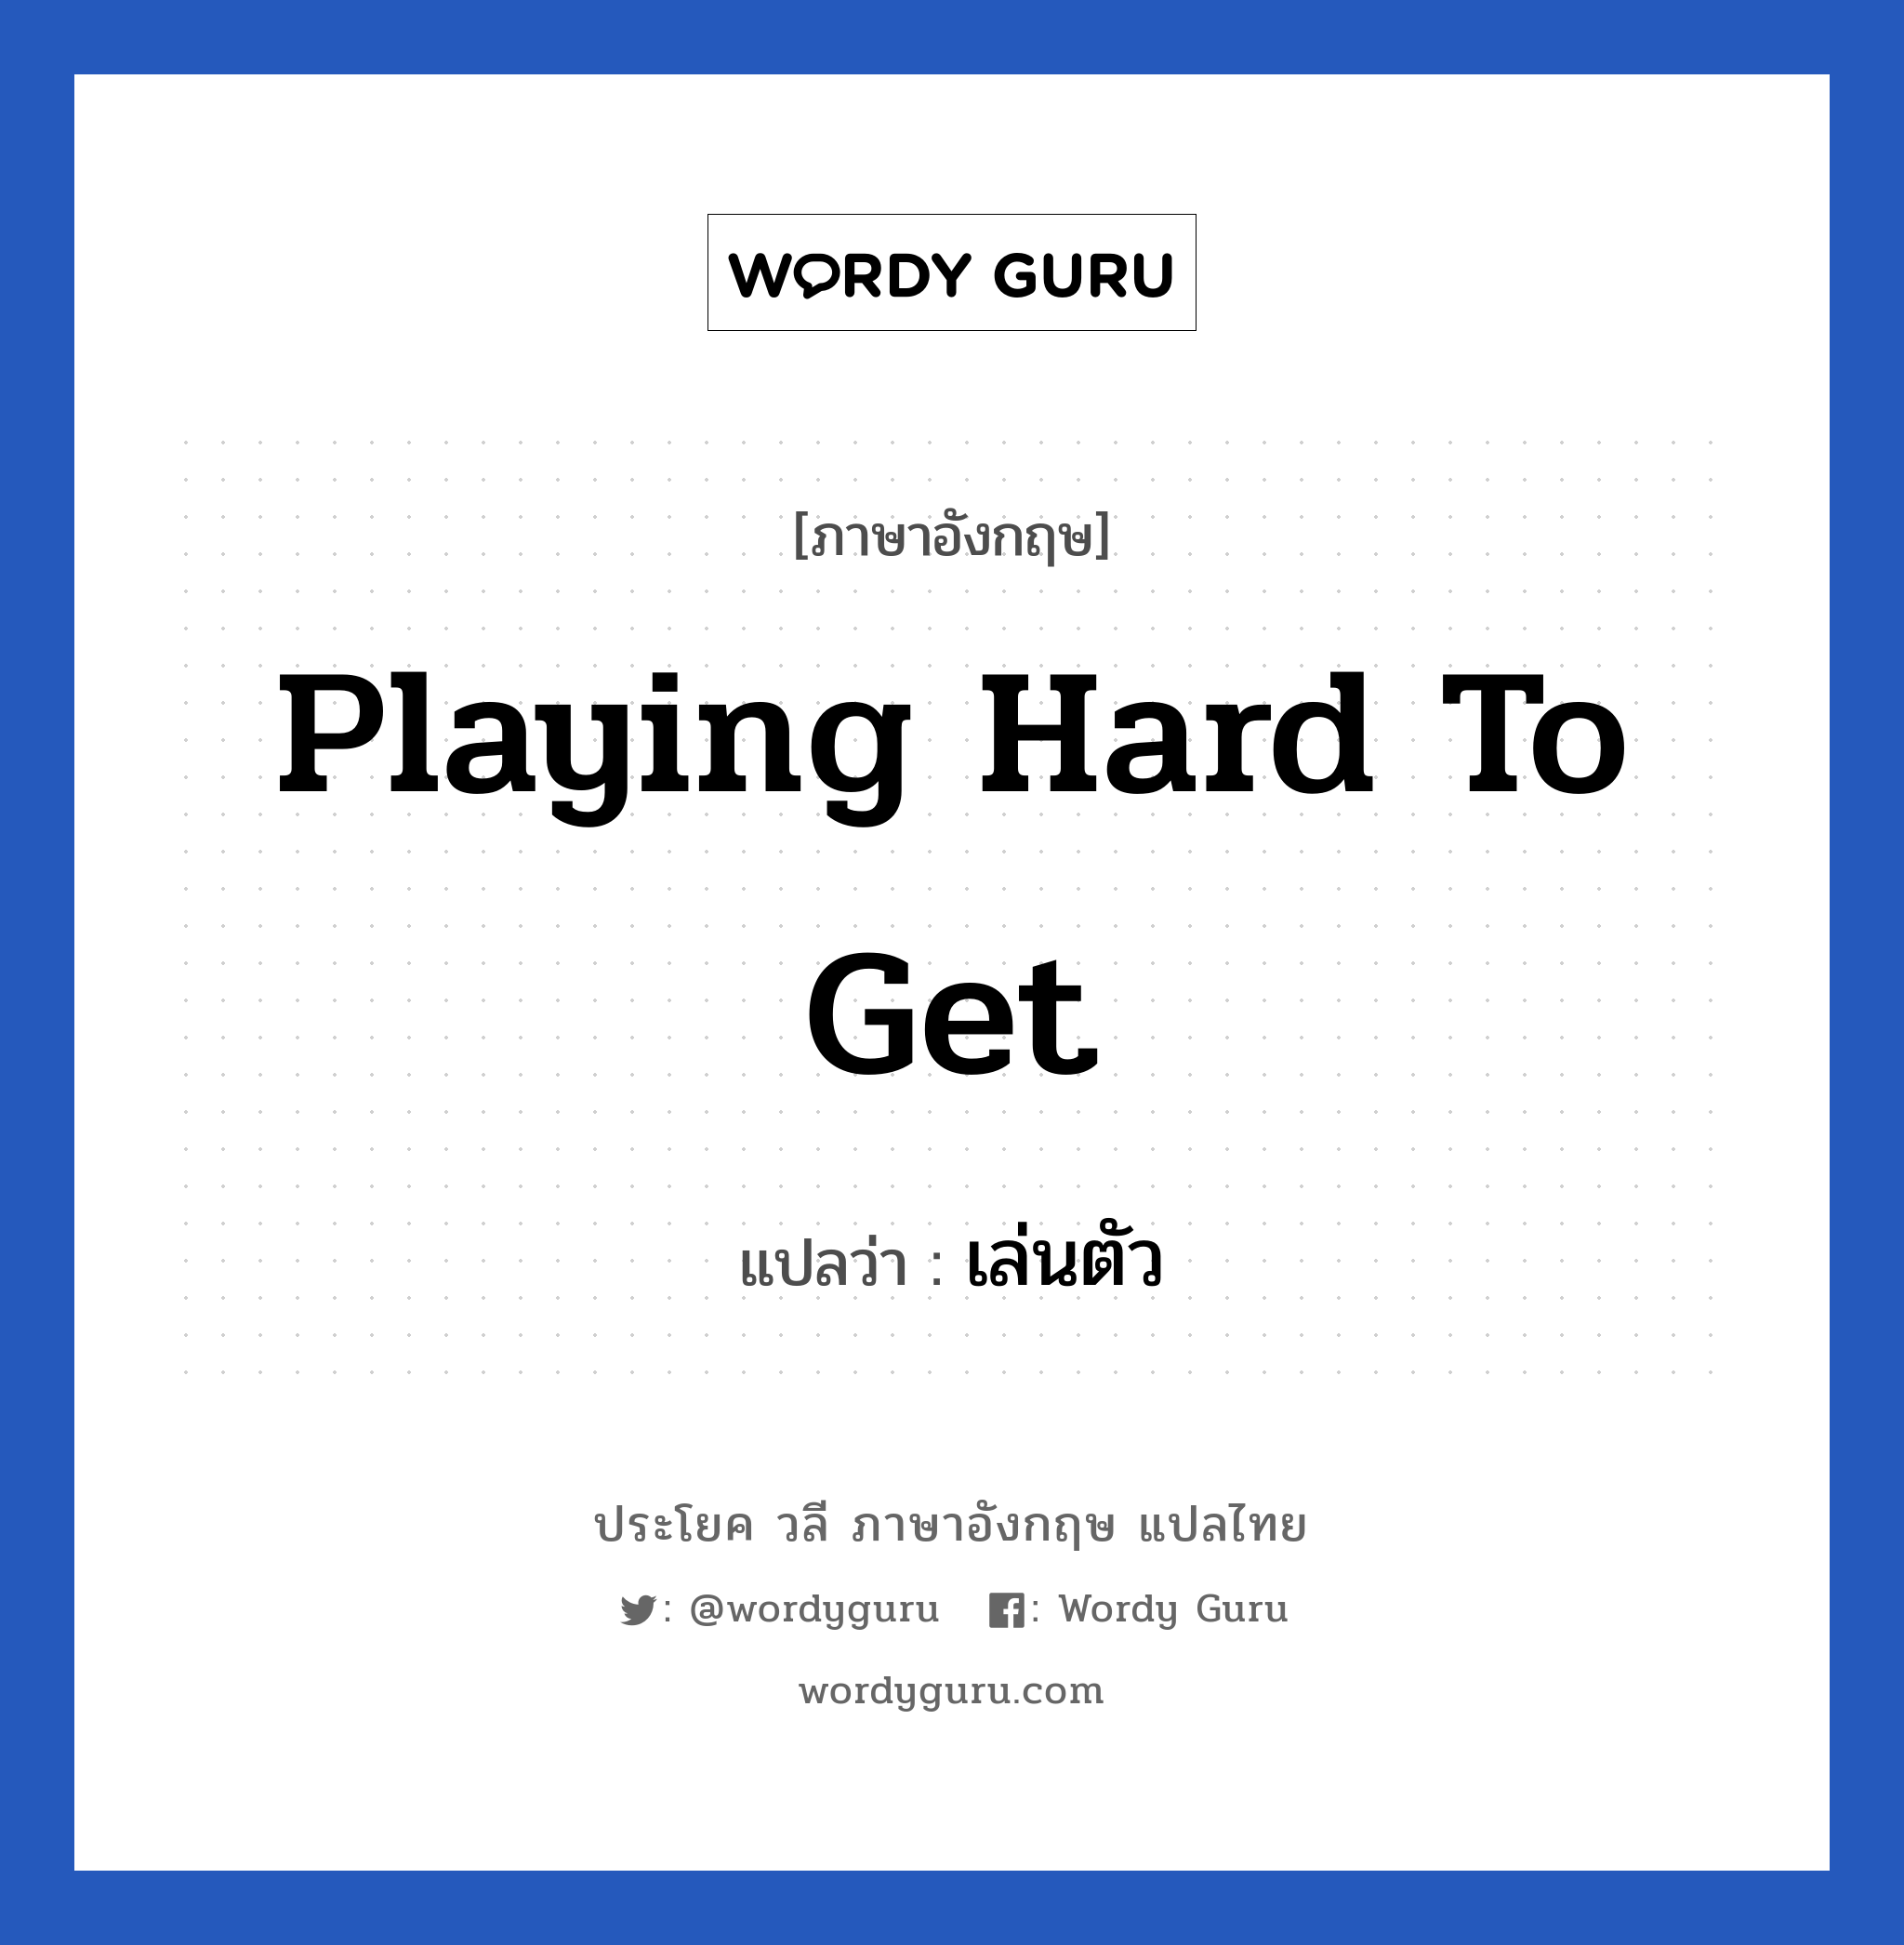 เล่นตัว ภาษาอังกฤษ?, วลีภาษาอังกฤษ เล่นตัว แปลว่า Playing hard to get